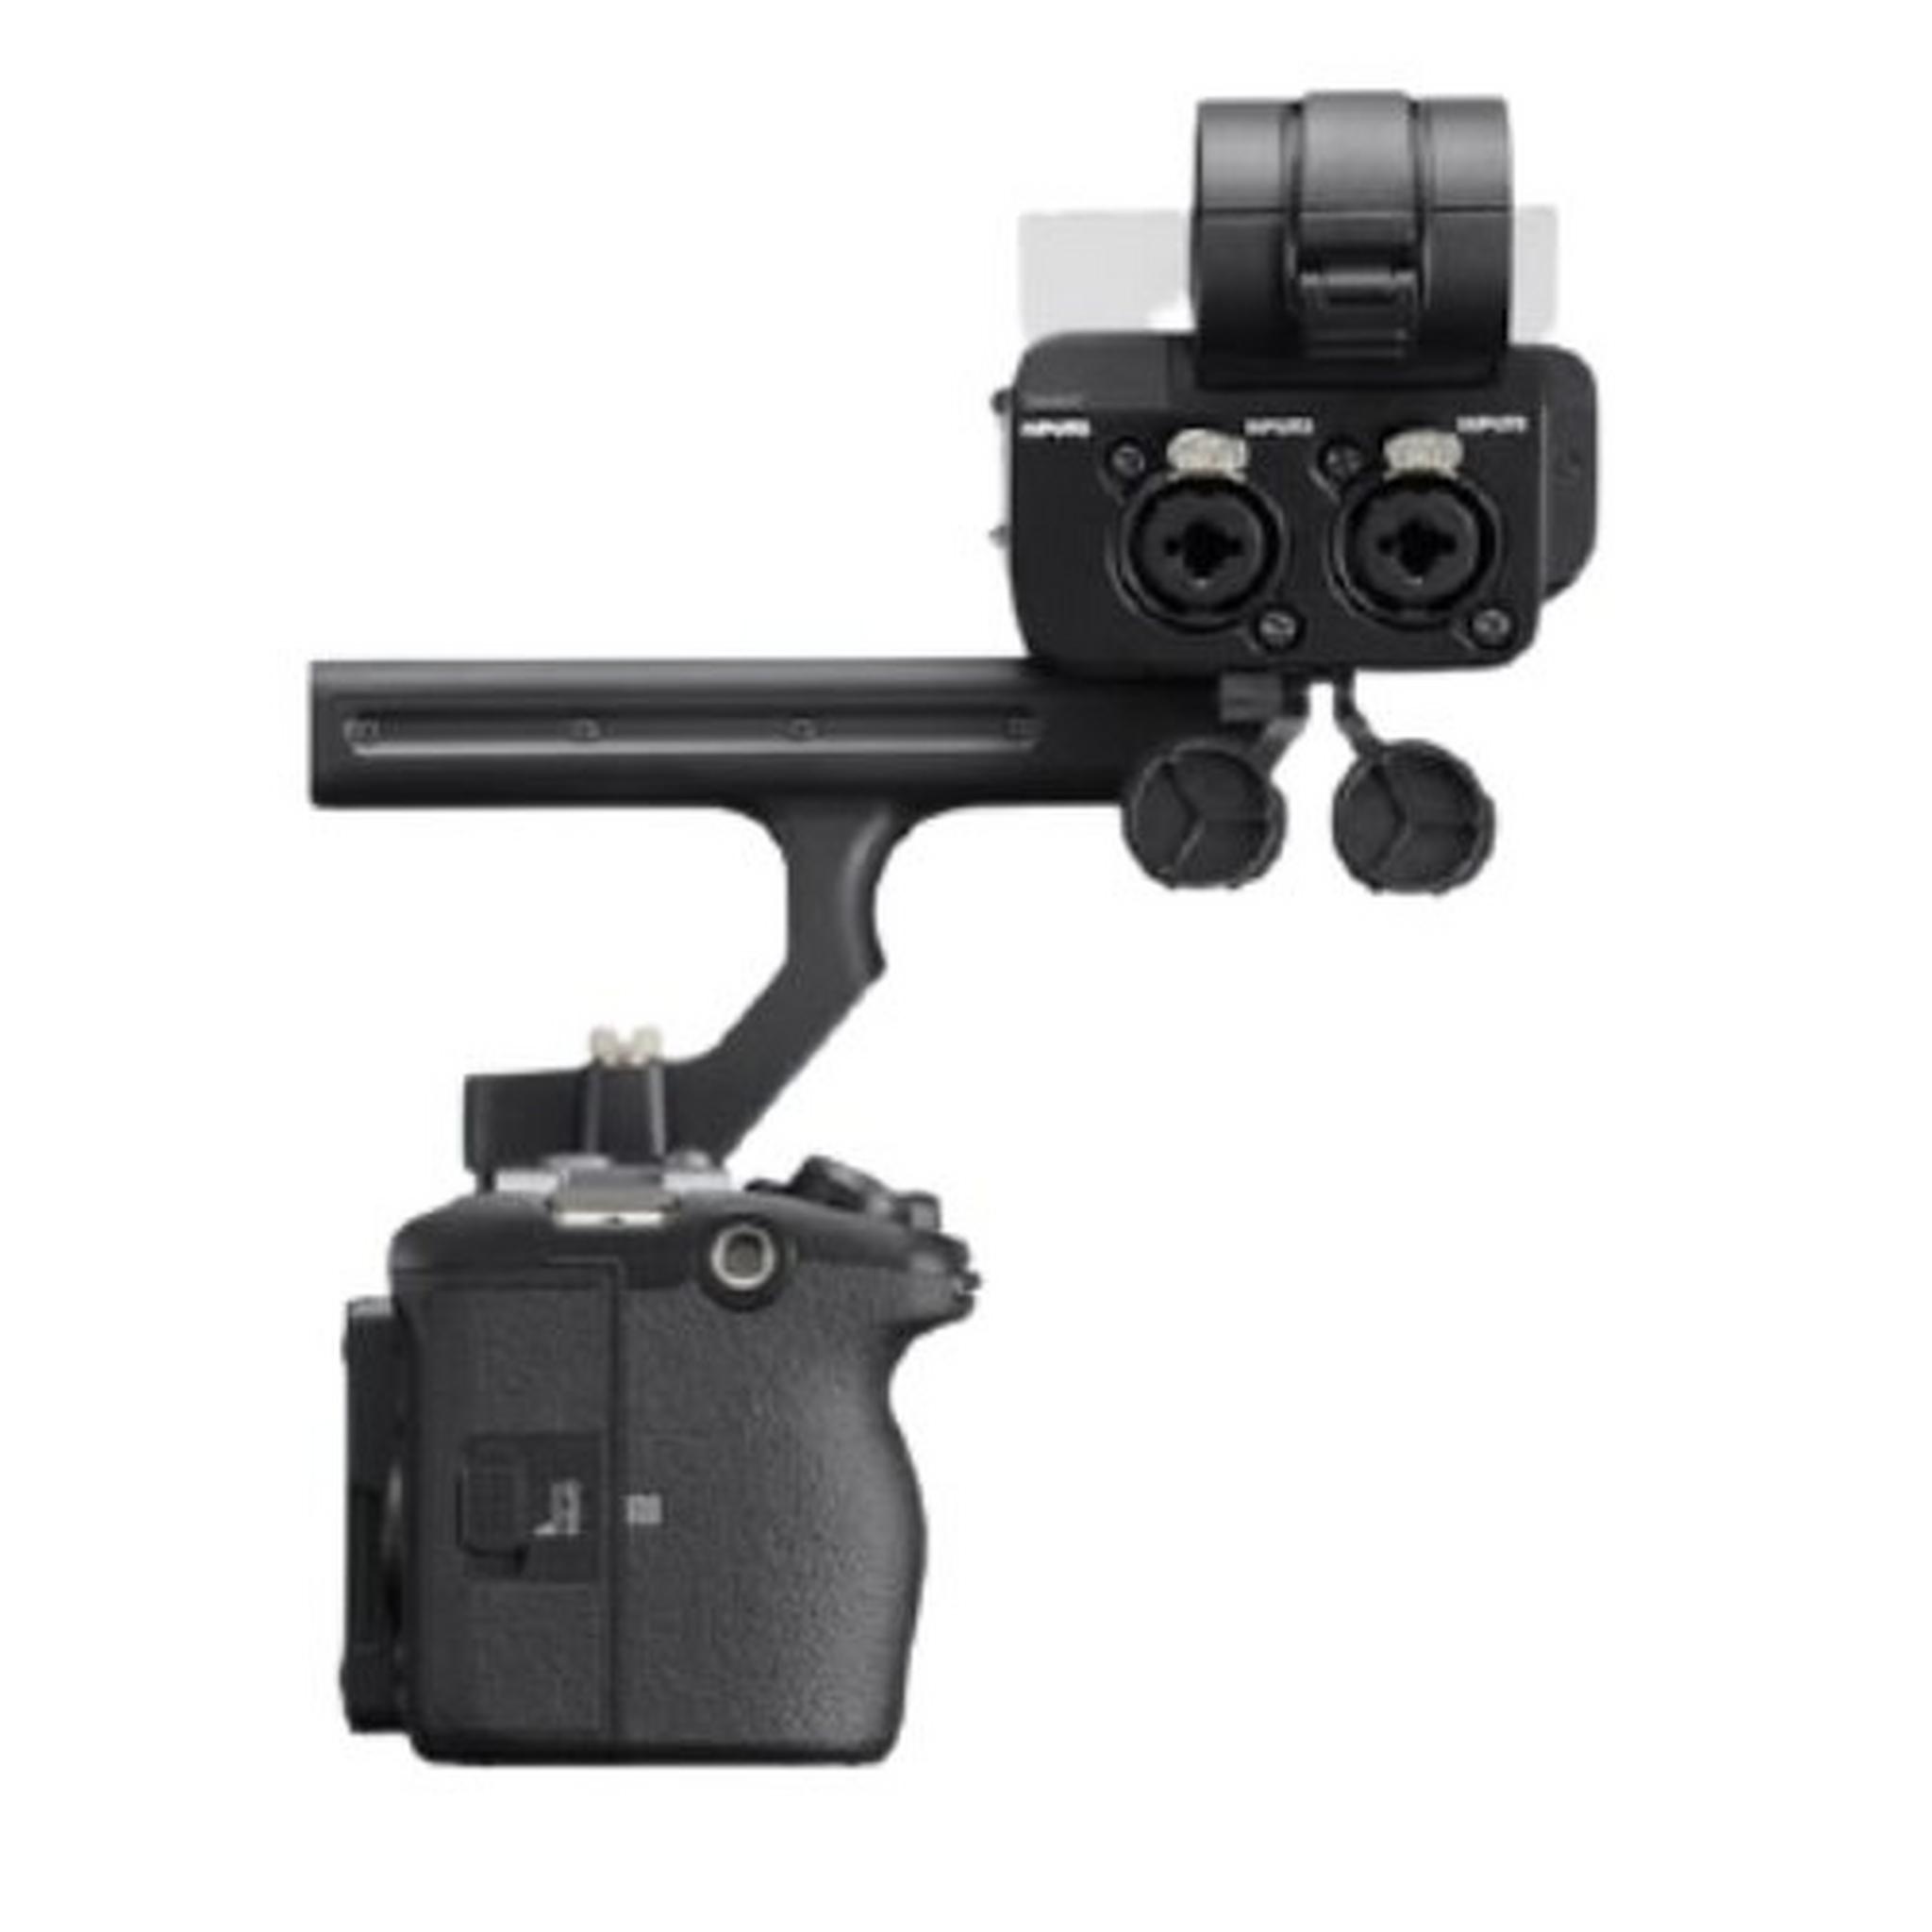 كاميرا سوني FX3 من سلسلة سينيما لاين كاملة الإطار (ILME-FX3)